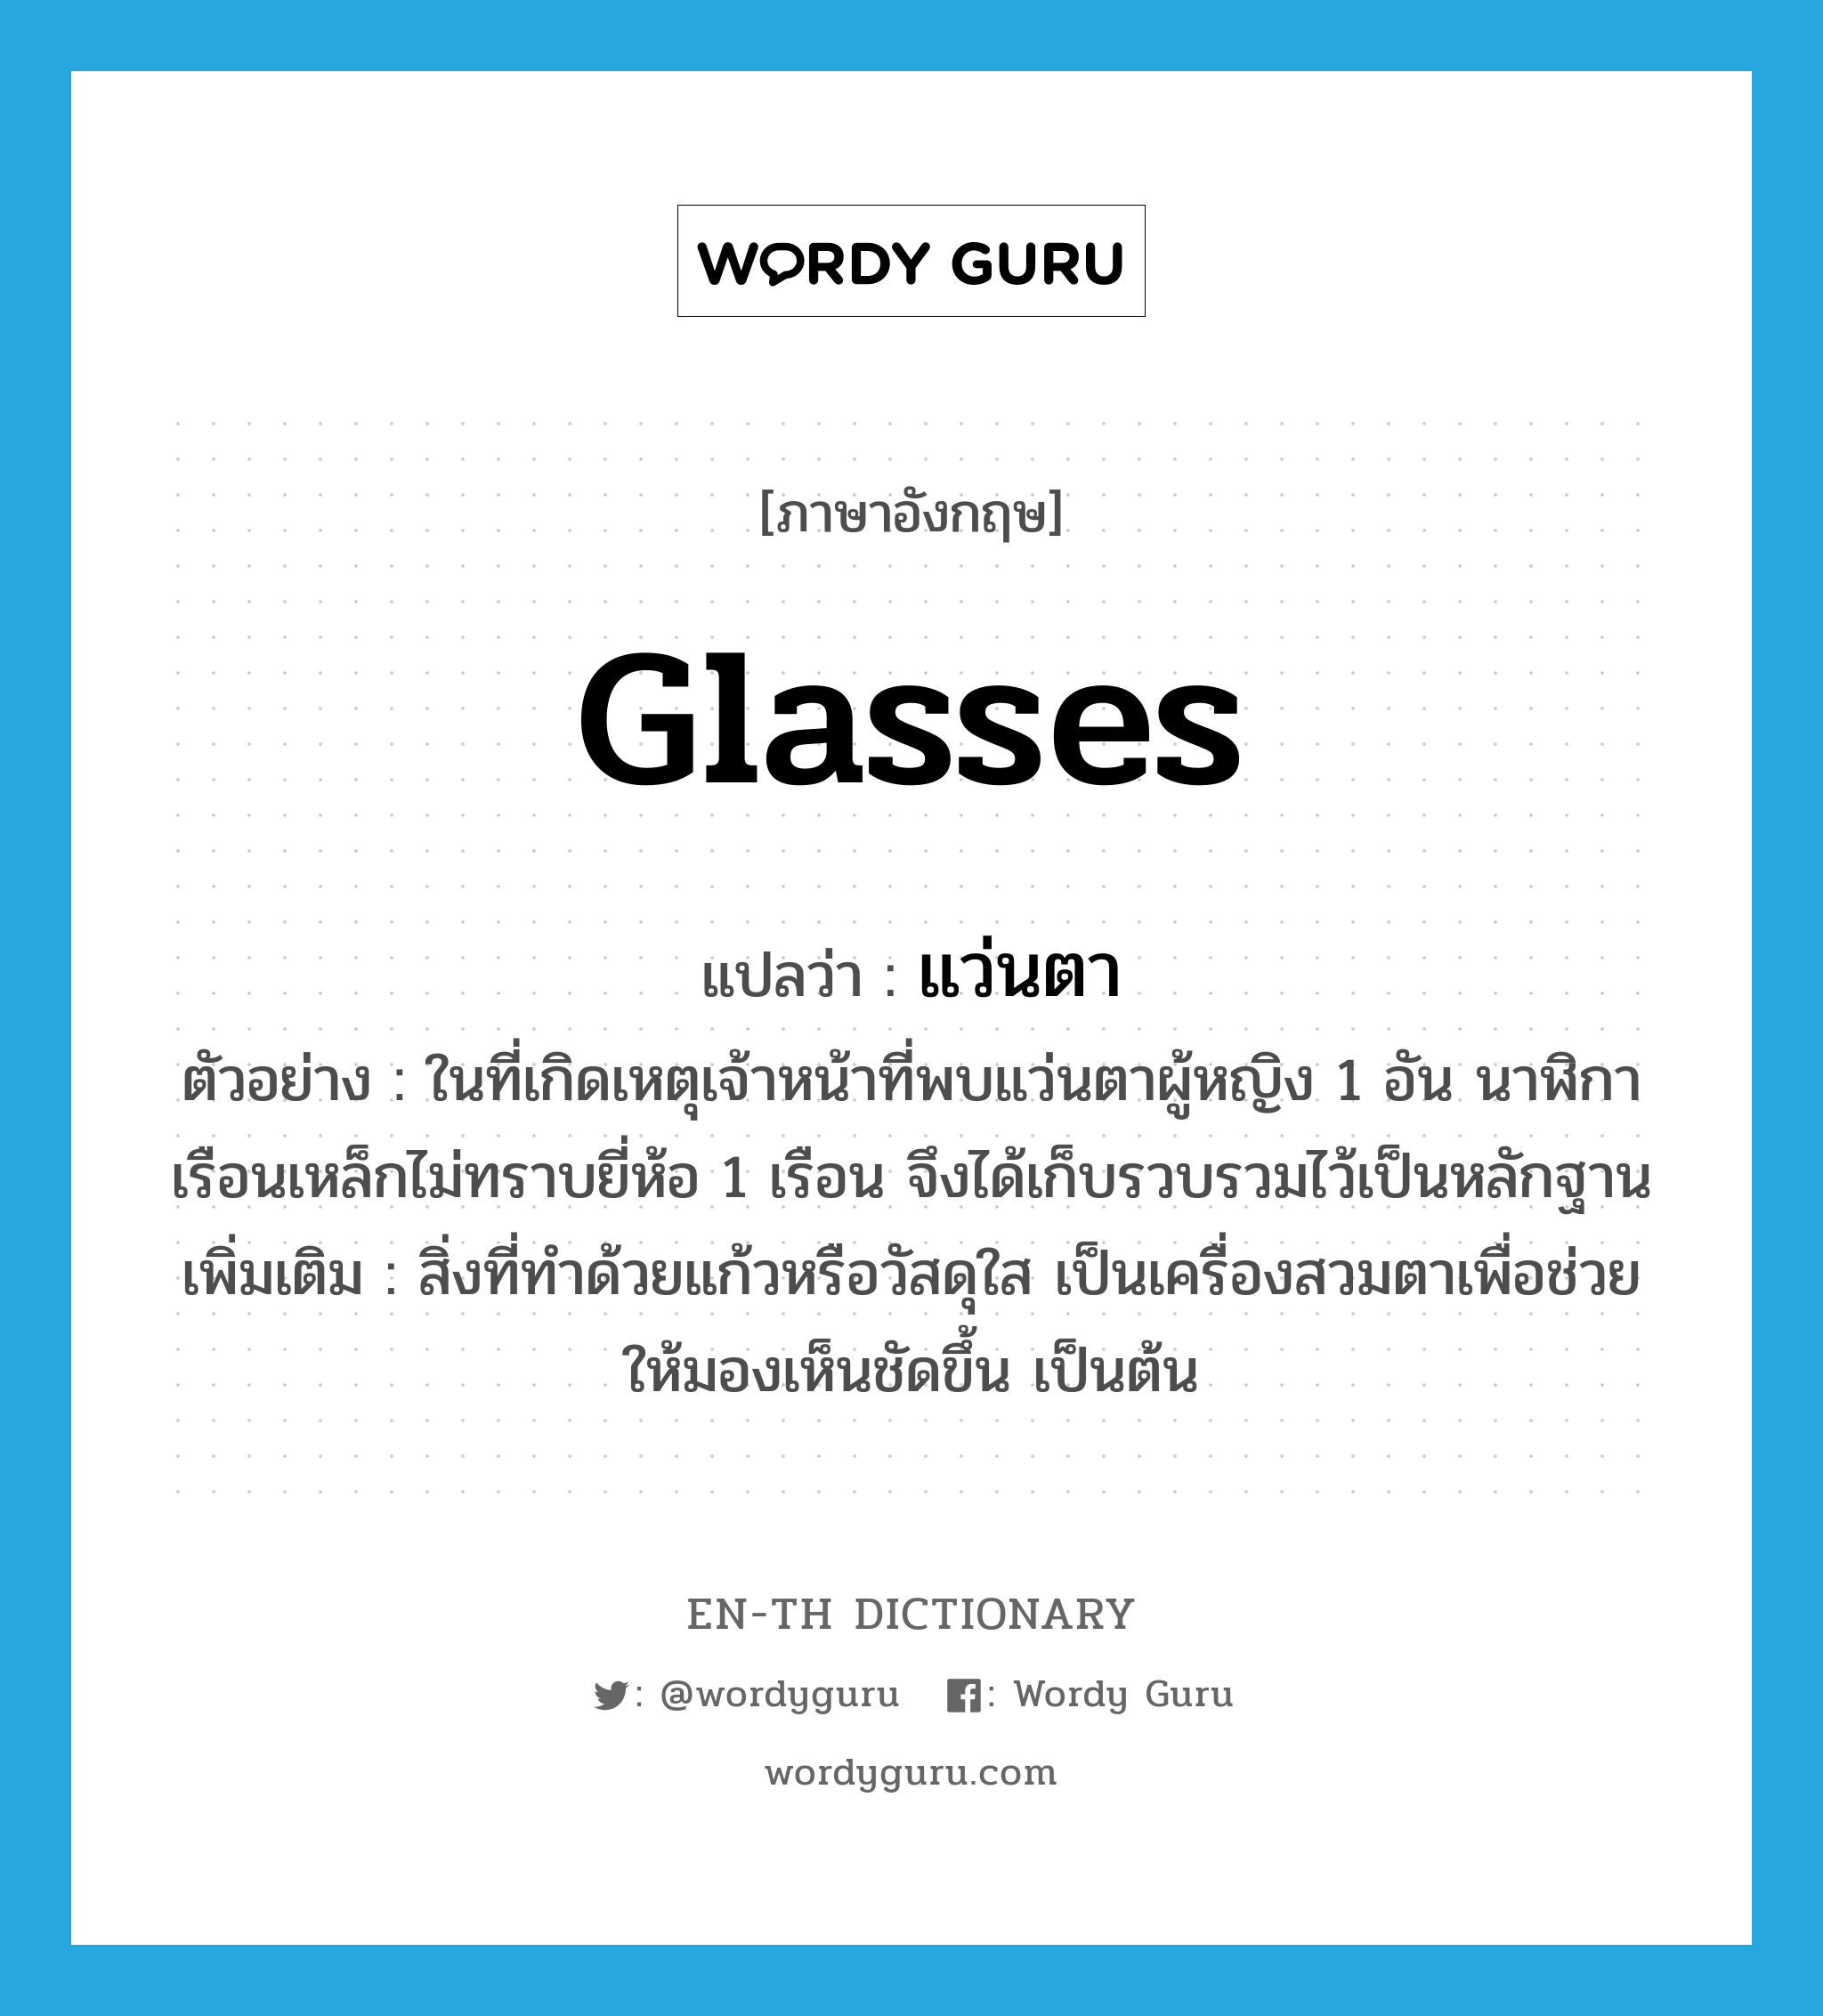 แว่นตา ภาษาอังกฤษ?, คำศัพท์ภาษาอังกฤษ แว่นตา แปลว่า glasses ประเภท N ตัวอย่าง ในที่เกิดเหตุเจ้าหน้าที่พบแว่นตาผู้หญิง 1 อัน นาฬิกาเรือนเหล็กไม่ทราบยี่ห้อ 1 เรือน จึงได้เก็บรวบรวมไว้เป็นหลักฐาน เพิ่มเติม สิ่งที่ทำด้วยแก้วหรือวัสดุใส เป็นเครื่องสวมตาเพื่อช่วยให้มองเห็นชัดขึ้น เป็นต้น หมวด N